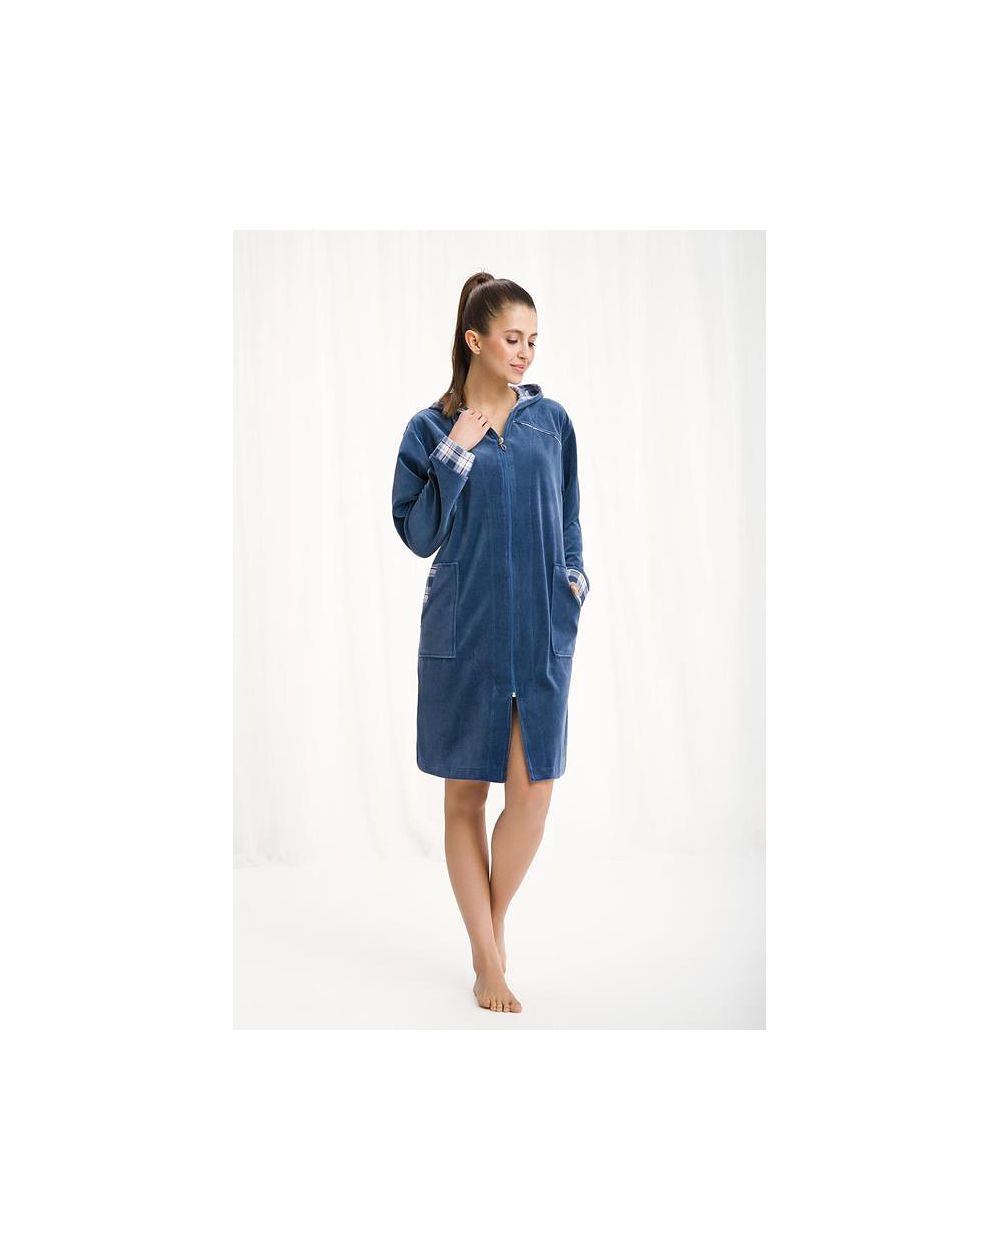 Luna 289 M-2XL bathrobe for women